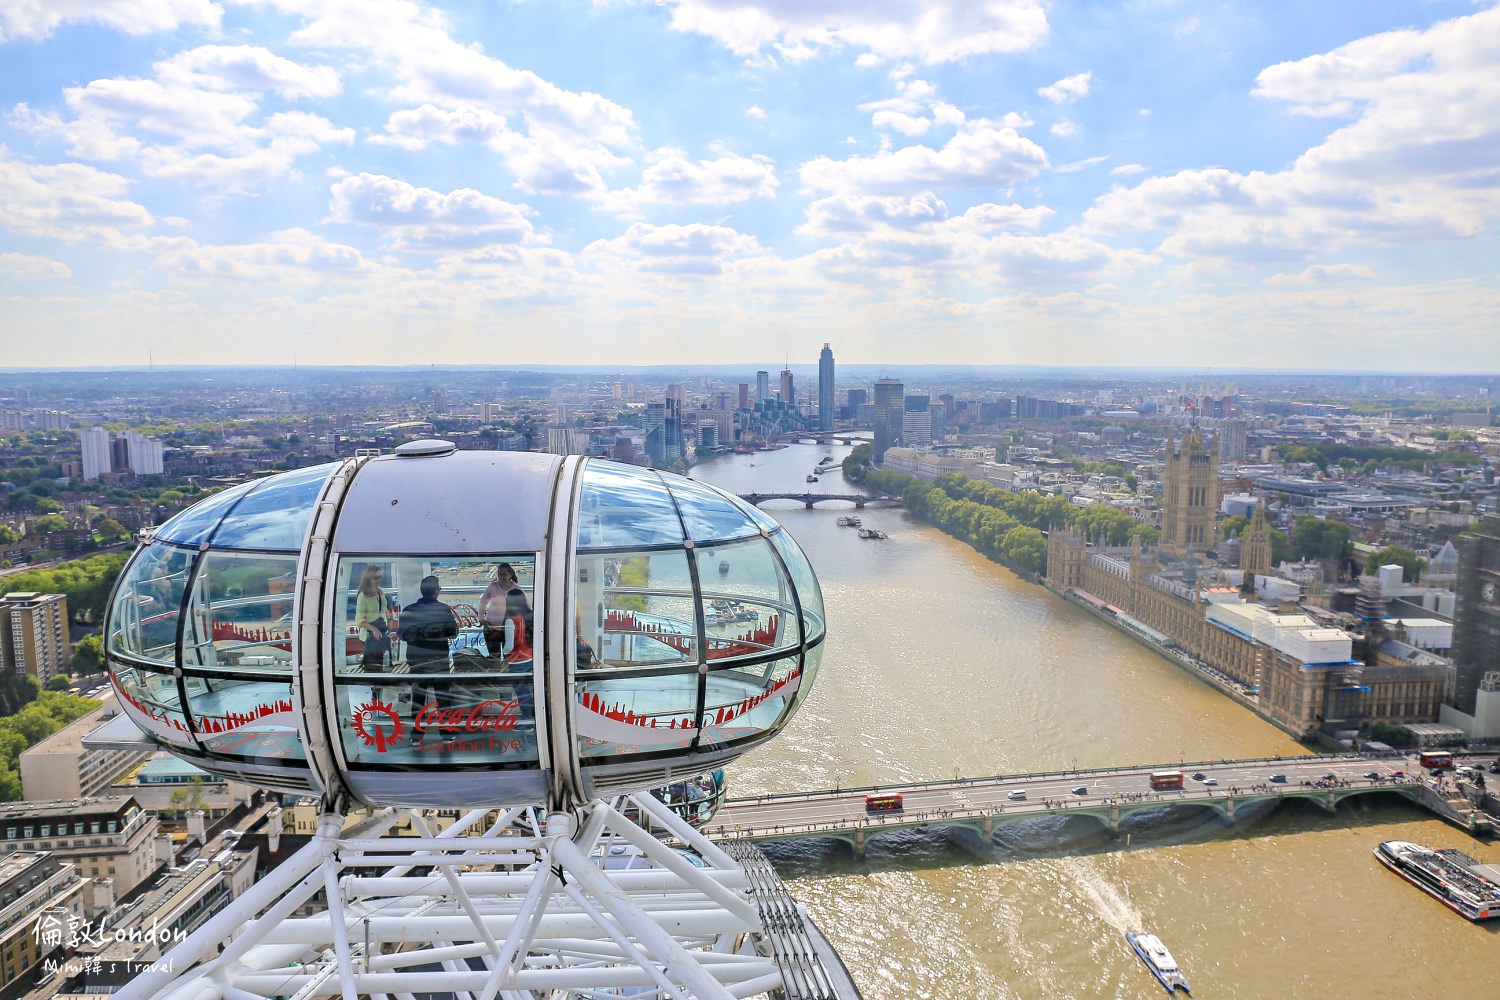 【倫敦景點】倫敦眼 London Eye：門票預約、購票方式和實際搭乘心得